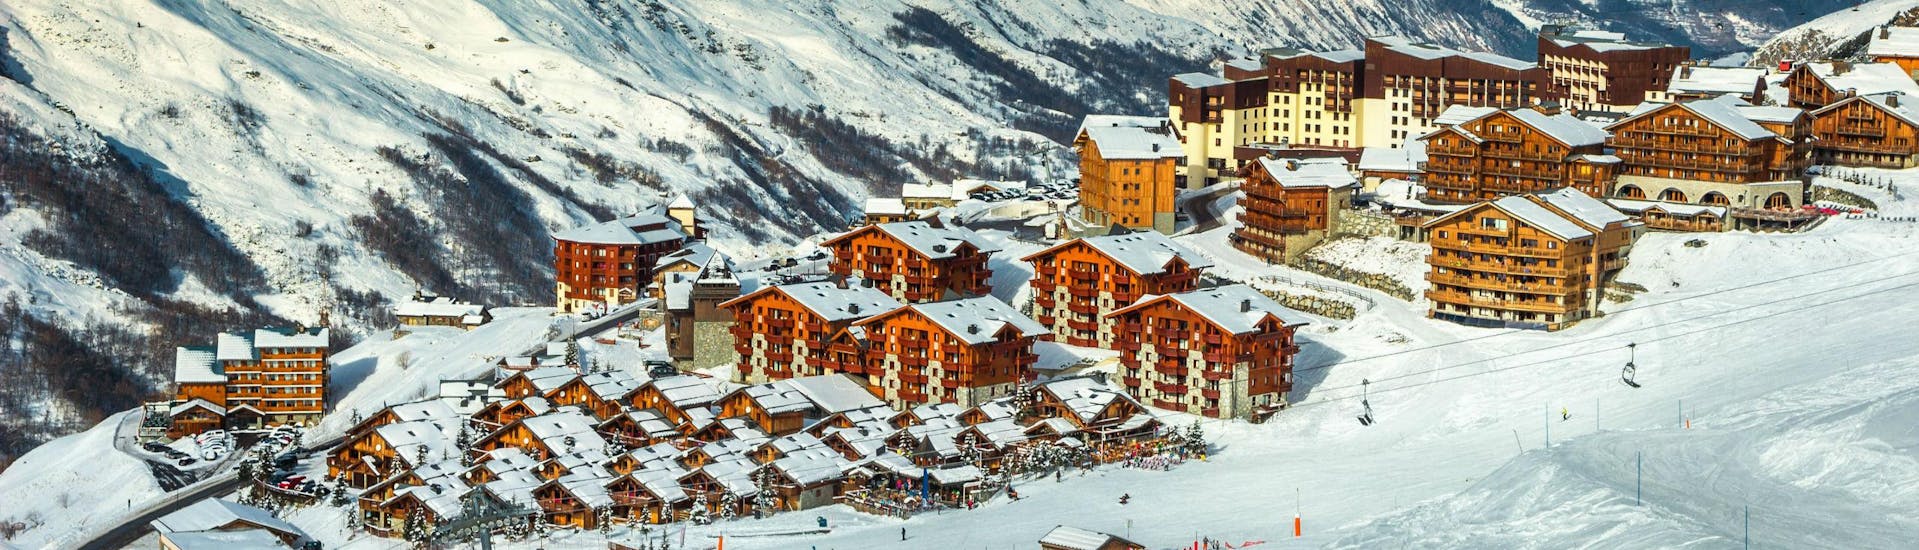 Une vue de la station de ski française Les Menuires, dans le domaine skiable des Trois Vallées, où les écoles de ski locales proposent des cours de ski pour les amateurs de sports de neige qui veulent apprendre à skier.